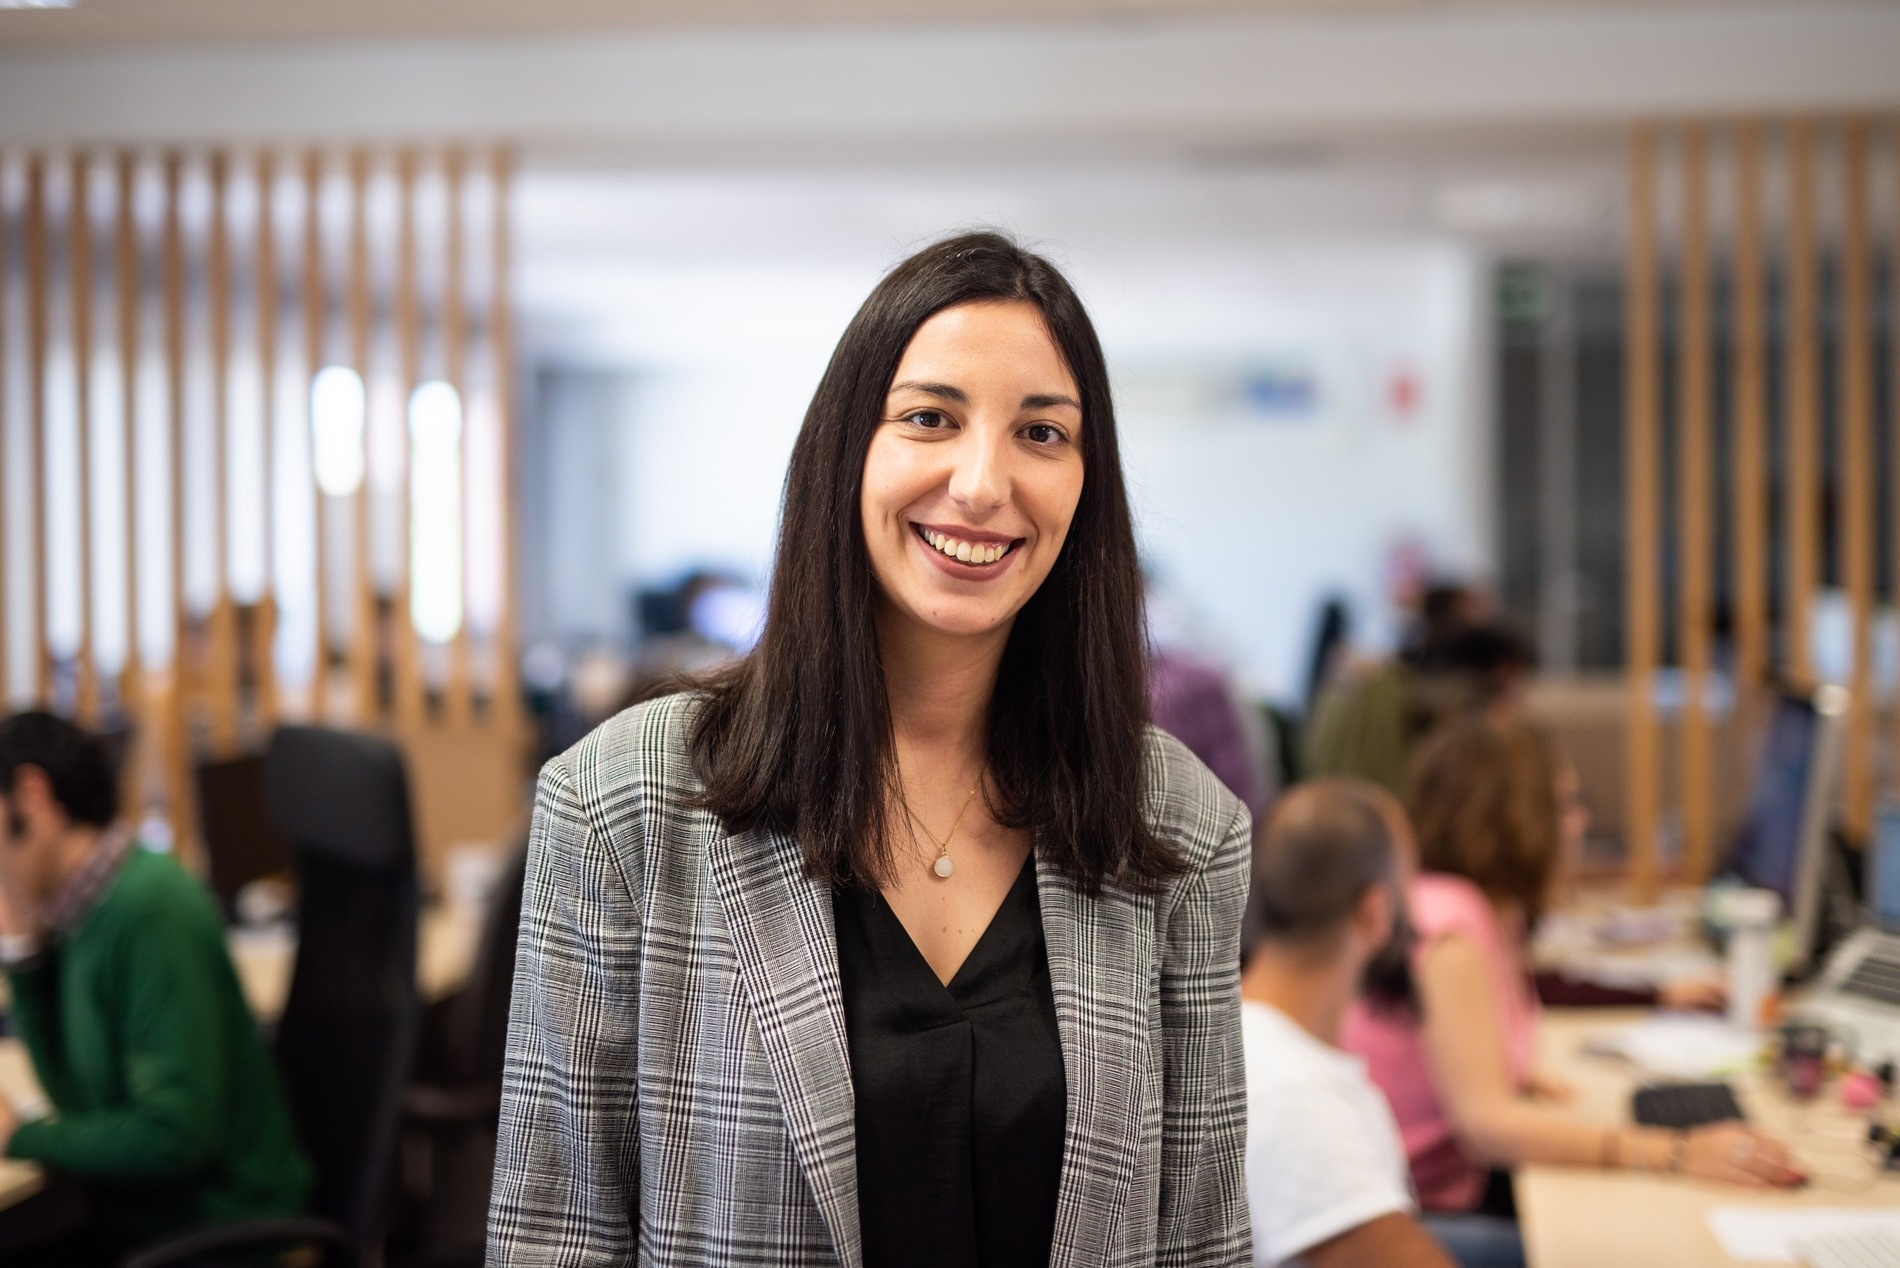 Com um incremento exponencial das vendas diretas desde 2016, Diana Costa lidera a delegação lusa da Paraty Tech, que inaugurará um escritório em Portugal em outubro de 2019